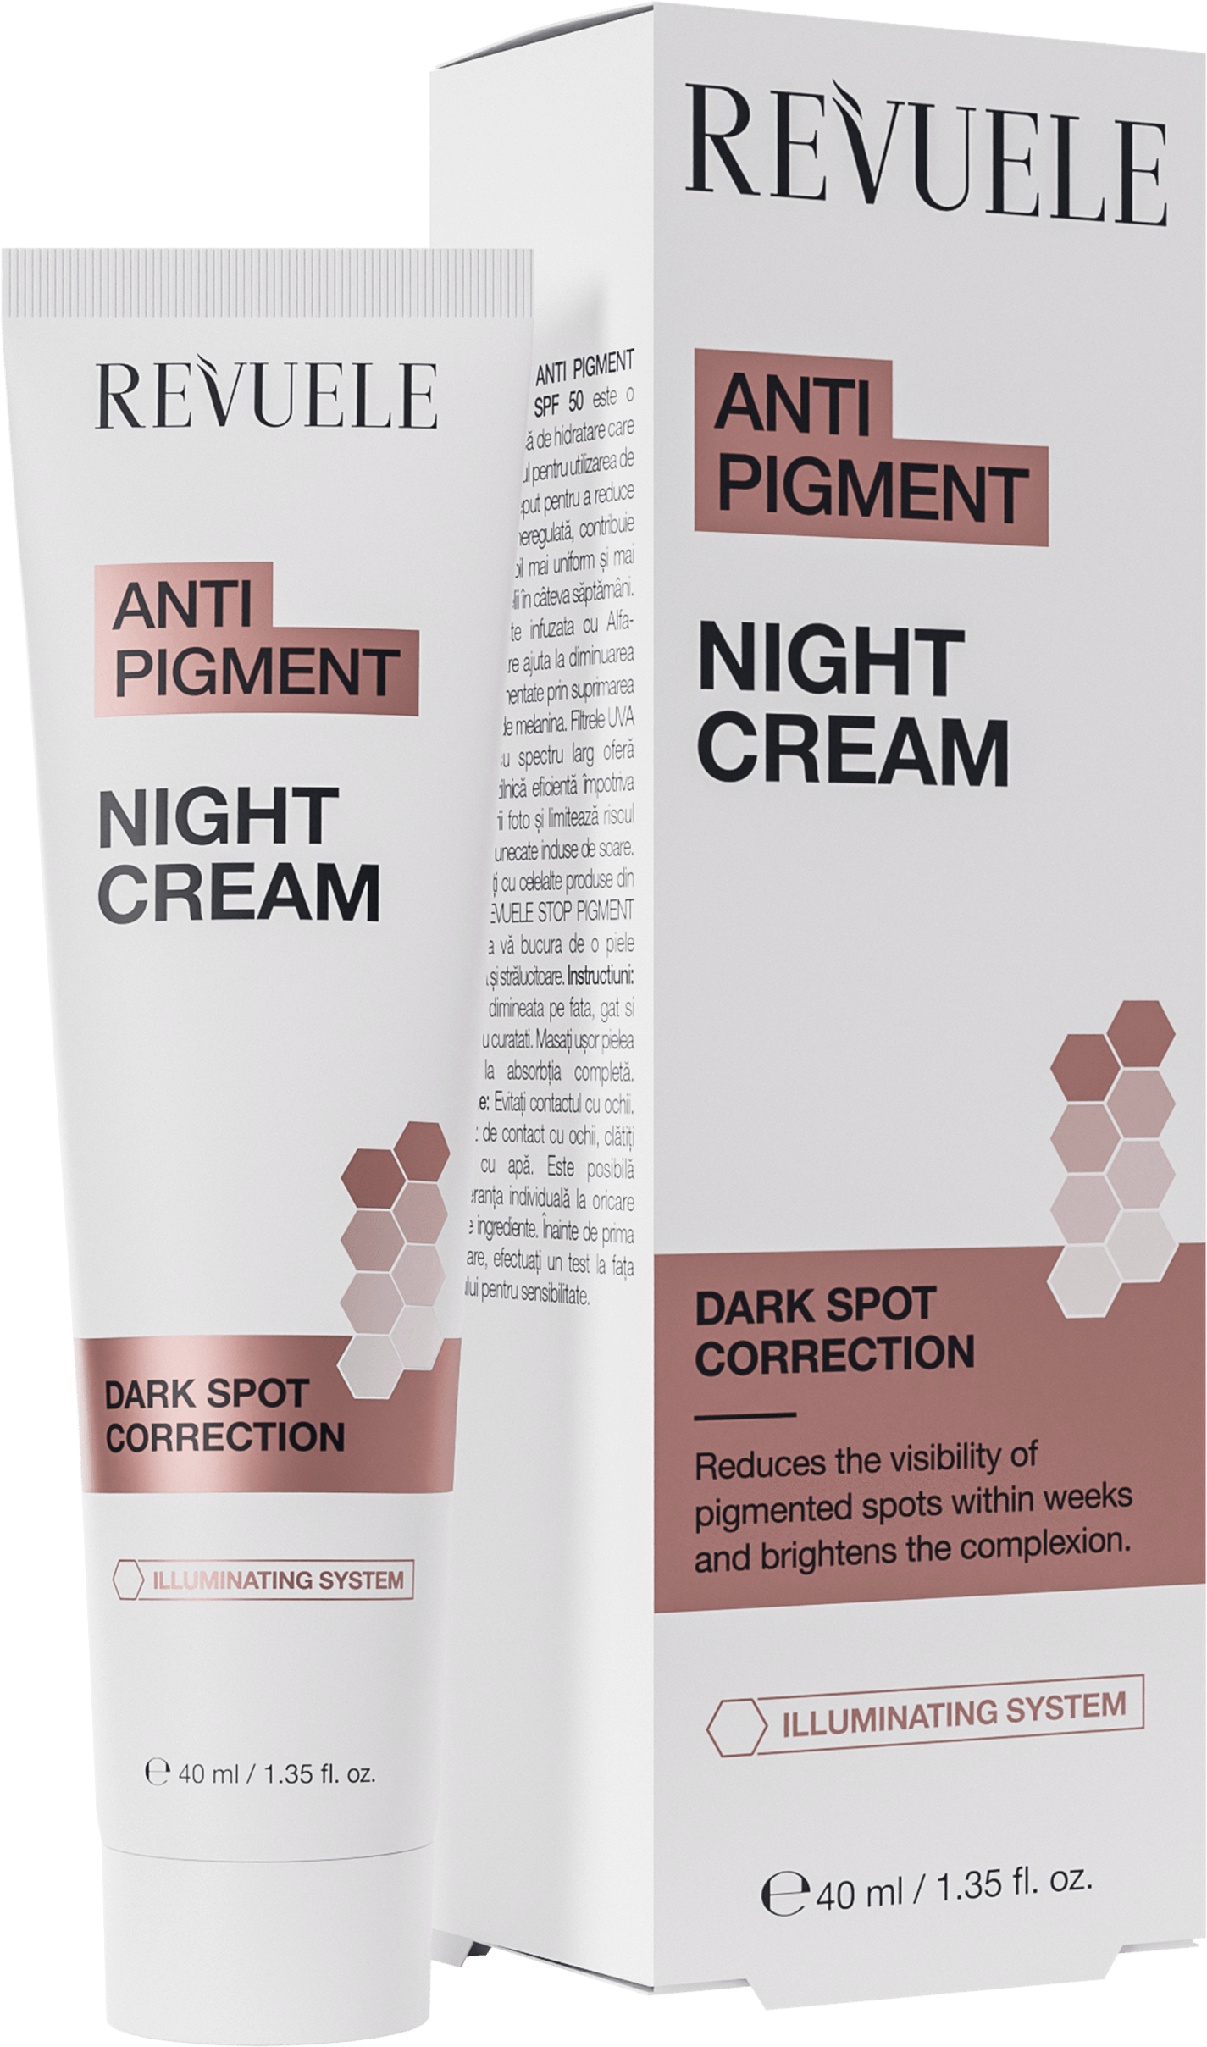 Revuele Anti Pigment Night Cream